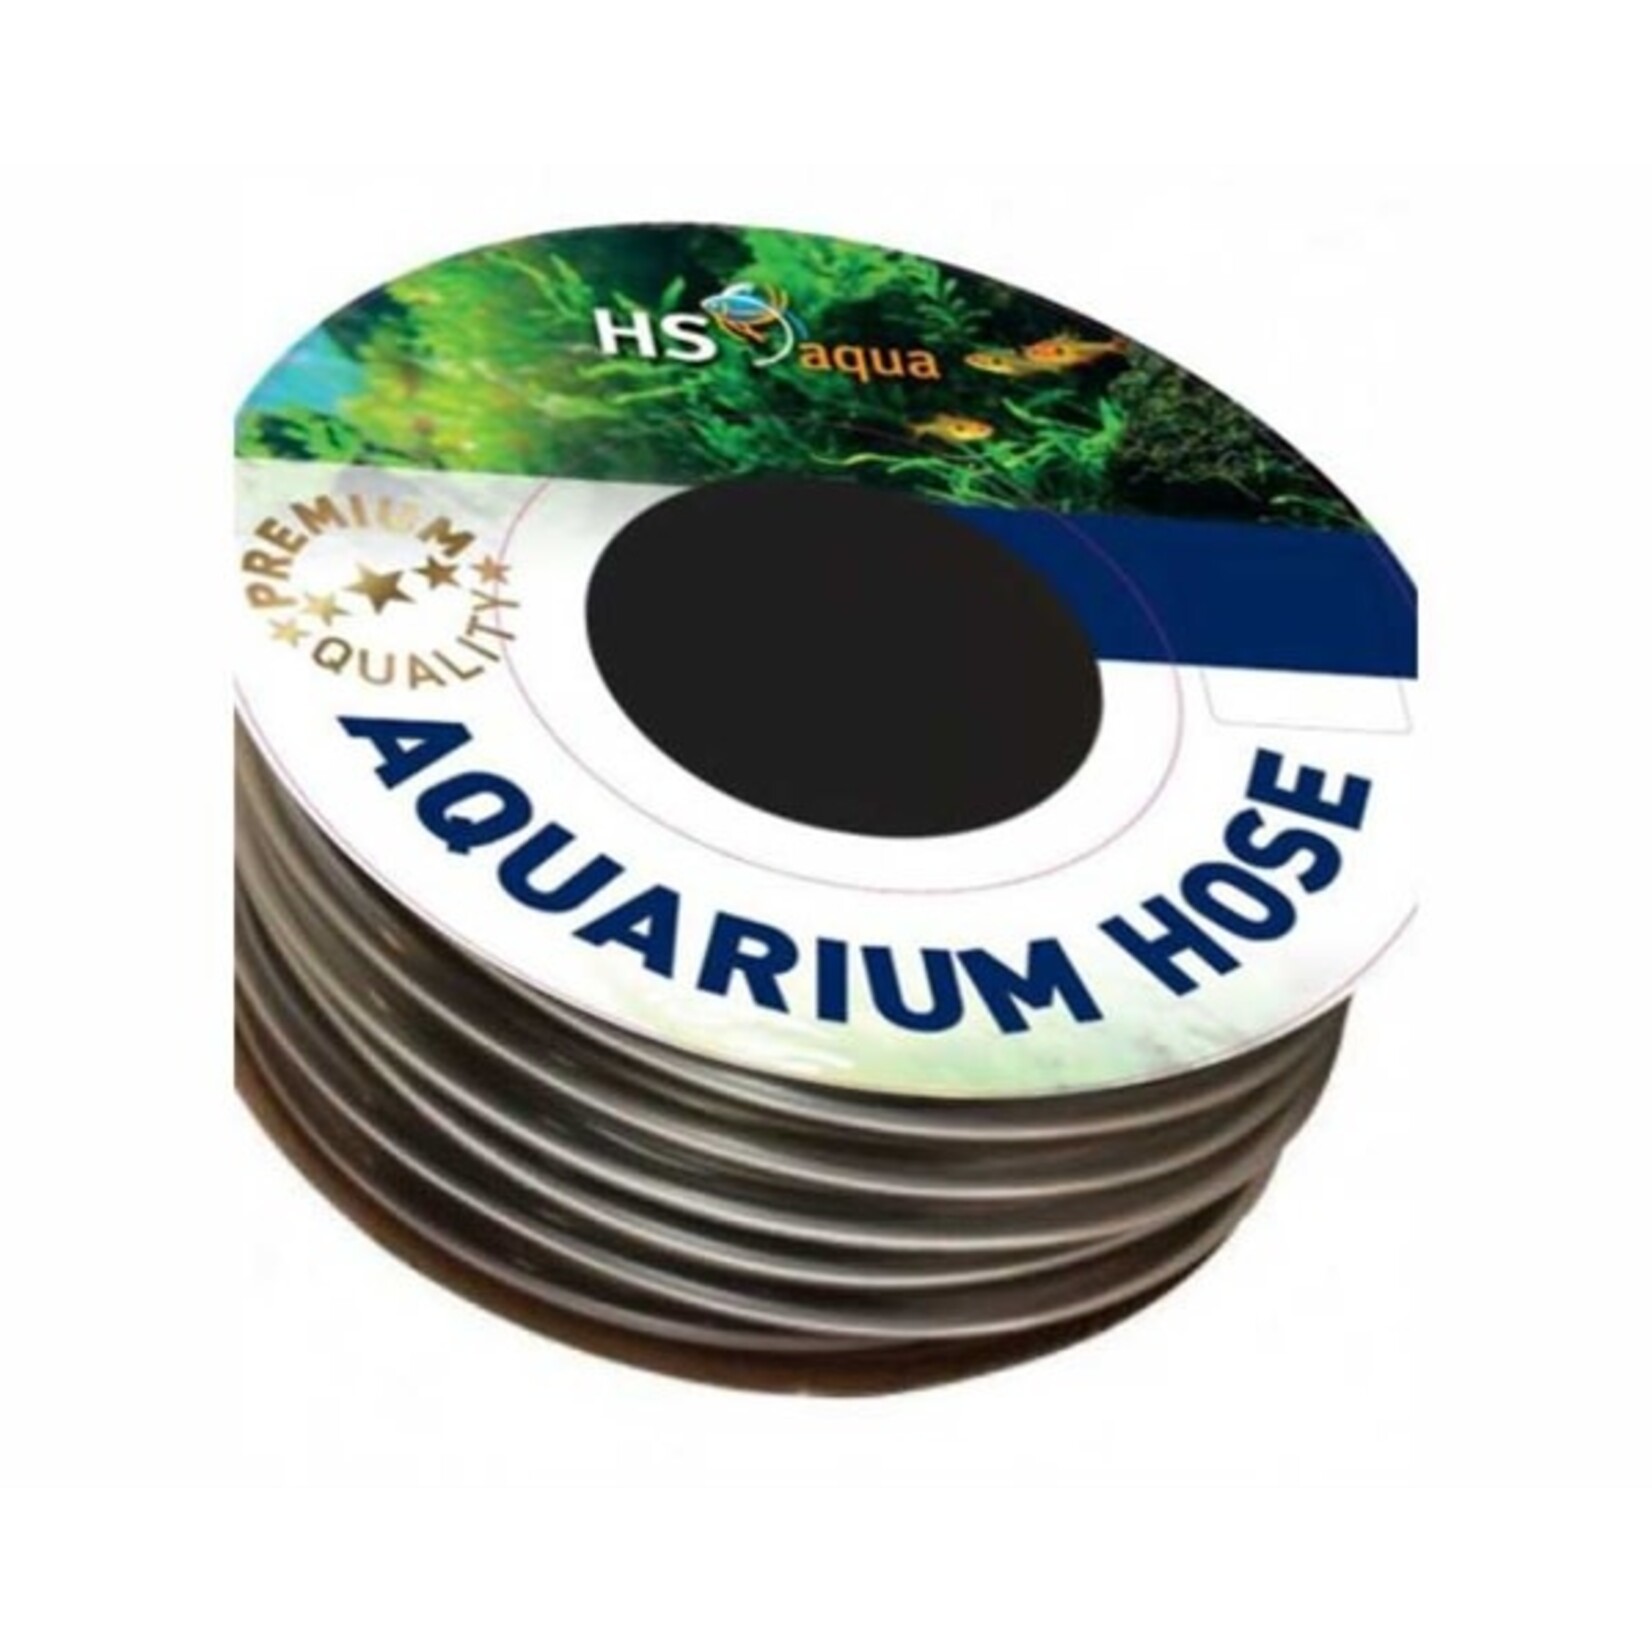 HS Aqua Anthracite hose 9-12 mm per meter